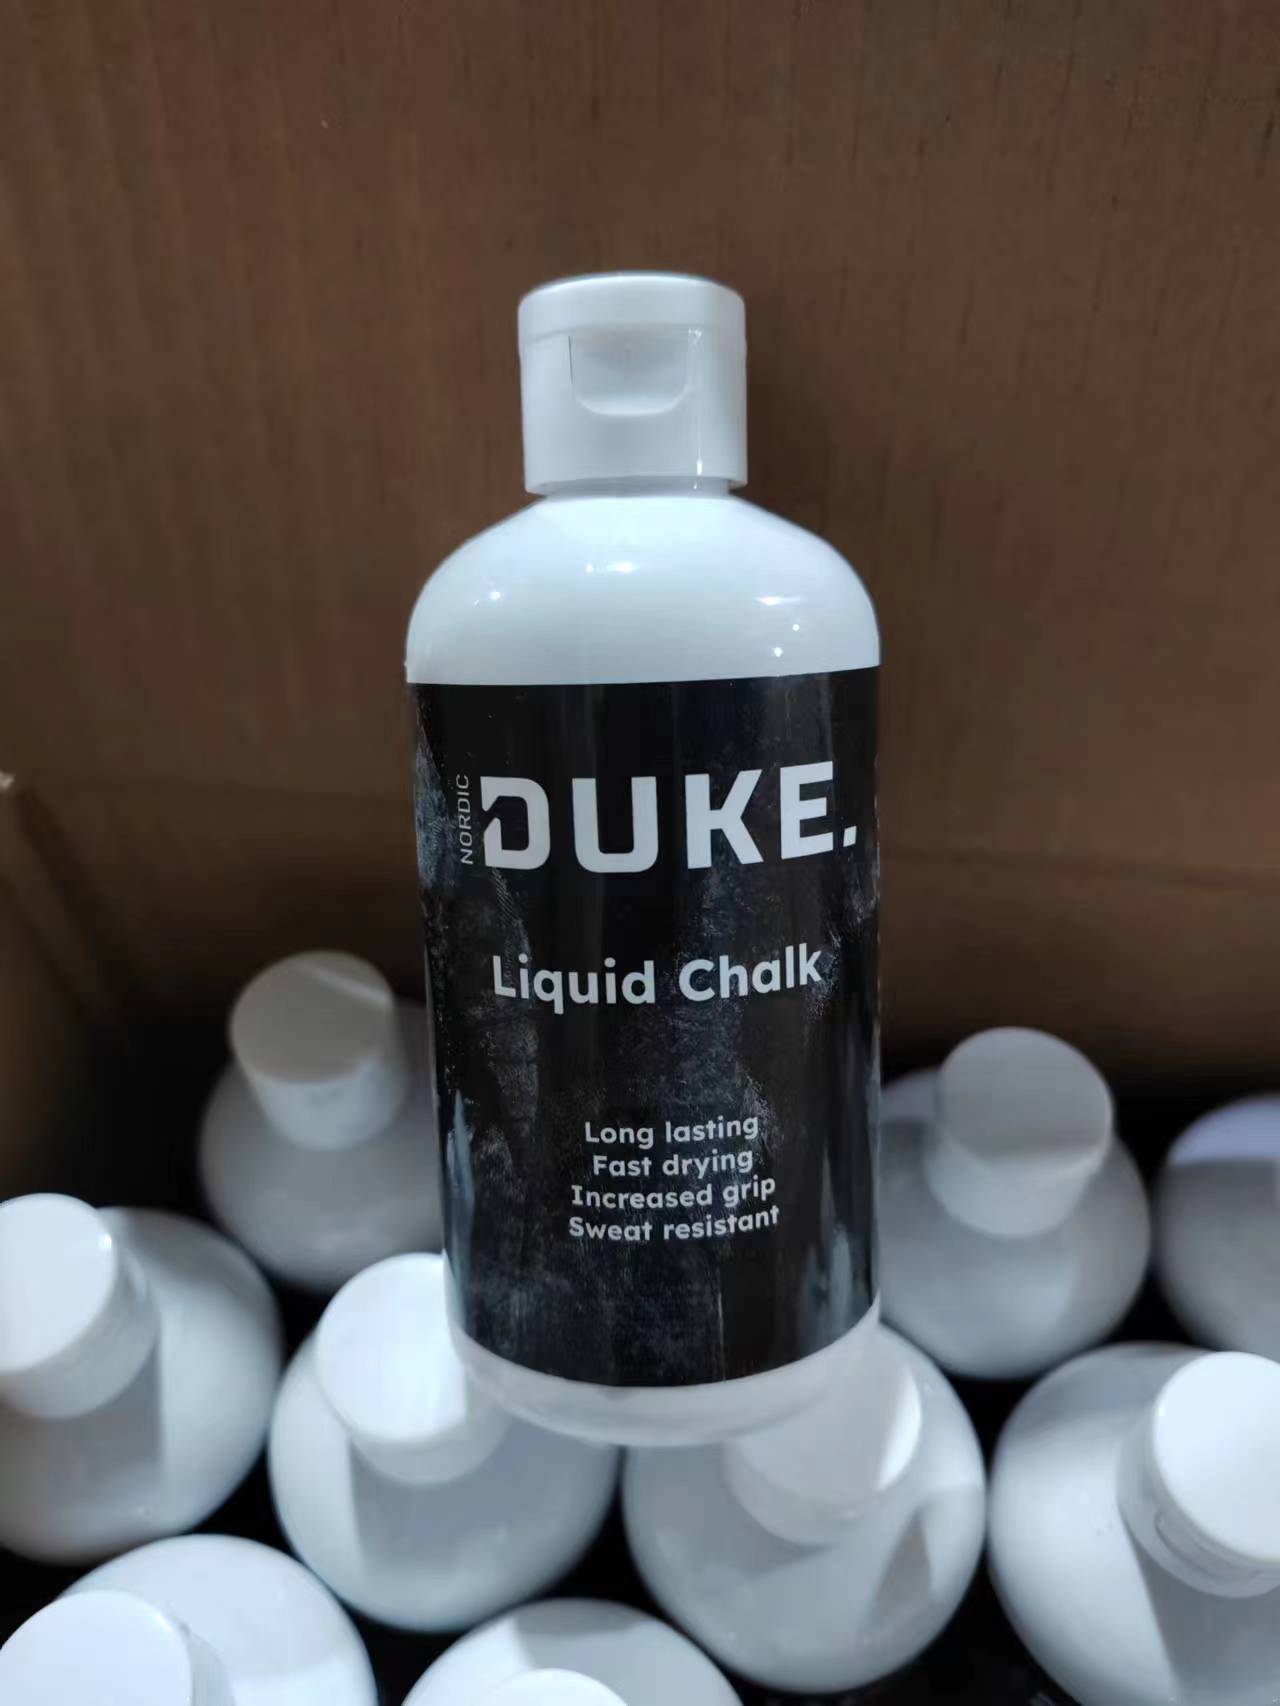 Laadukas tahnamainen Nordic Duke® Liquid Magnesium soveltuu moniin urheilusuorituksiin